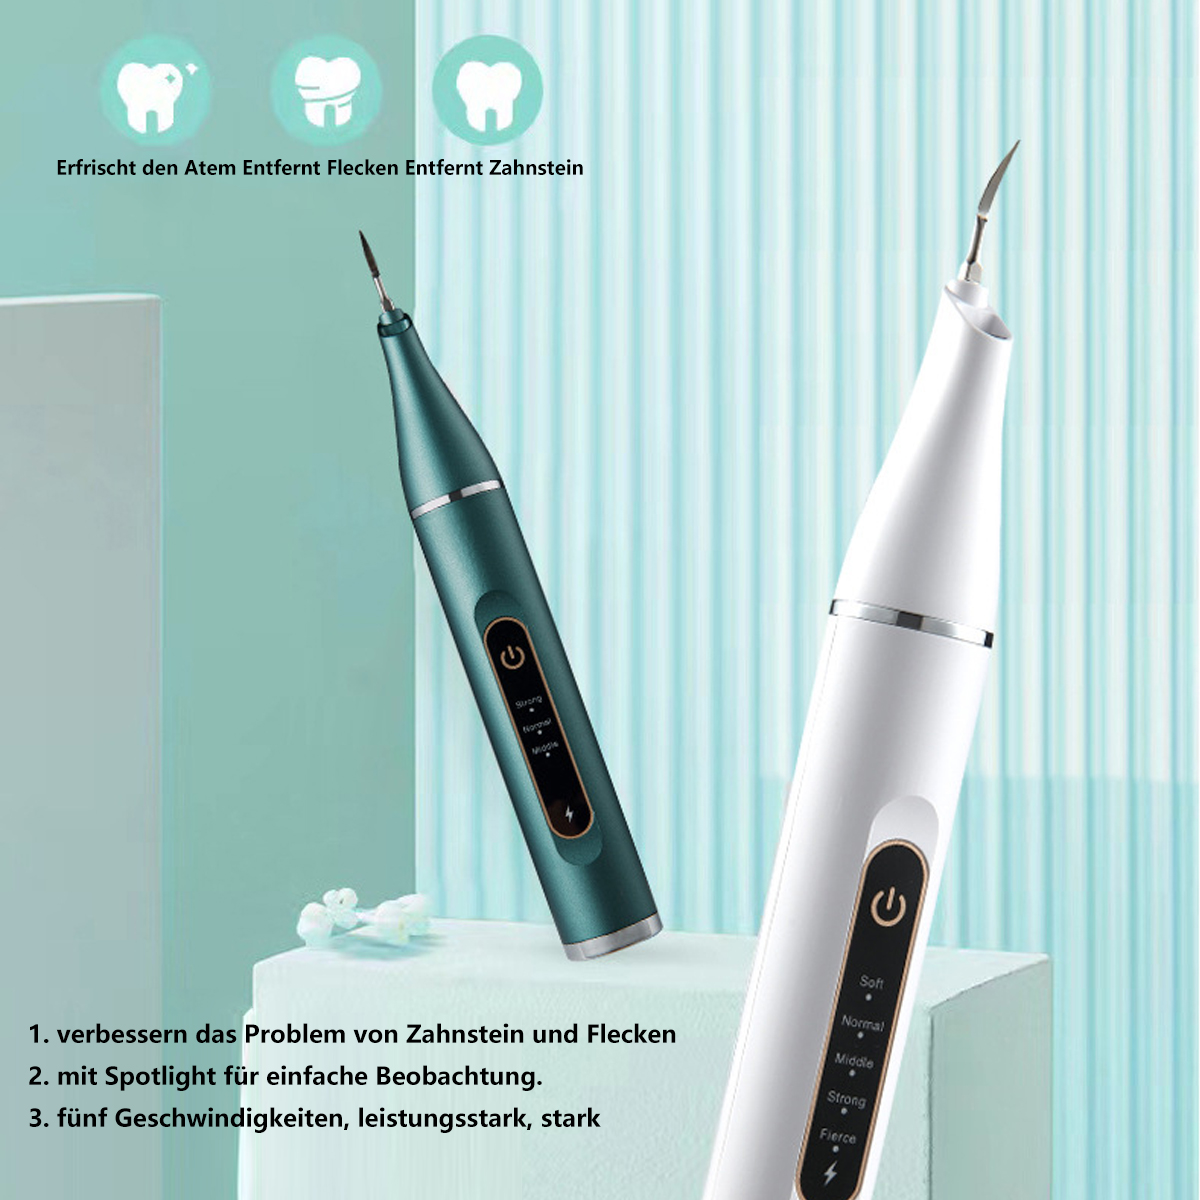 BYTELIKE Scaler grün Portable Ultraschall Oral Sie Zahnsteinentferner Munddusche Entfernen Zahnstein Care